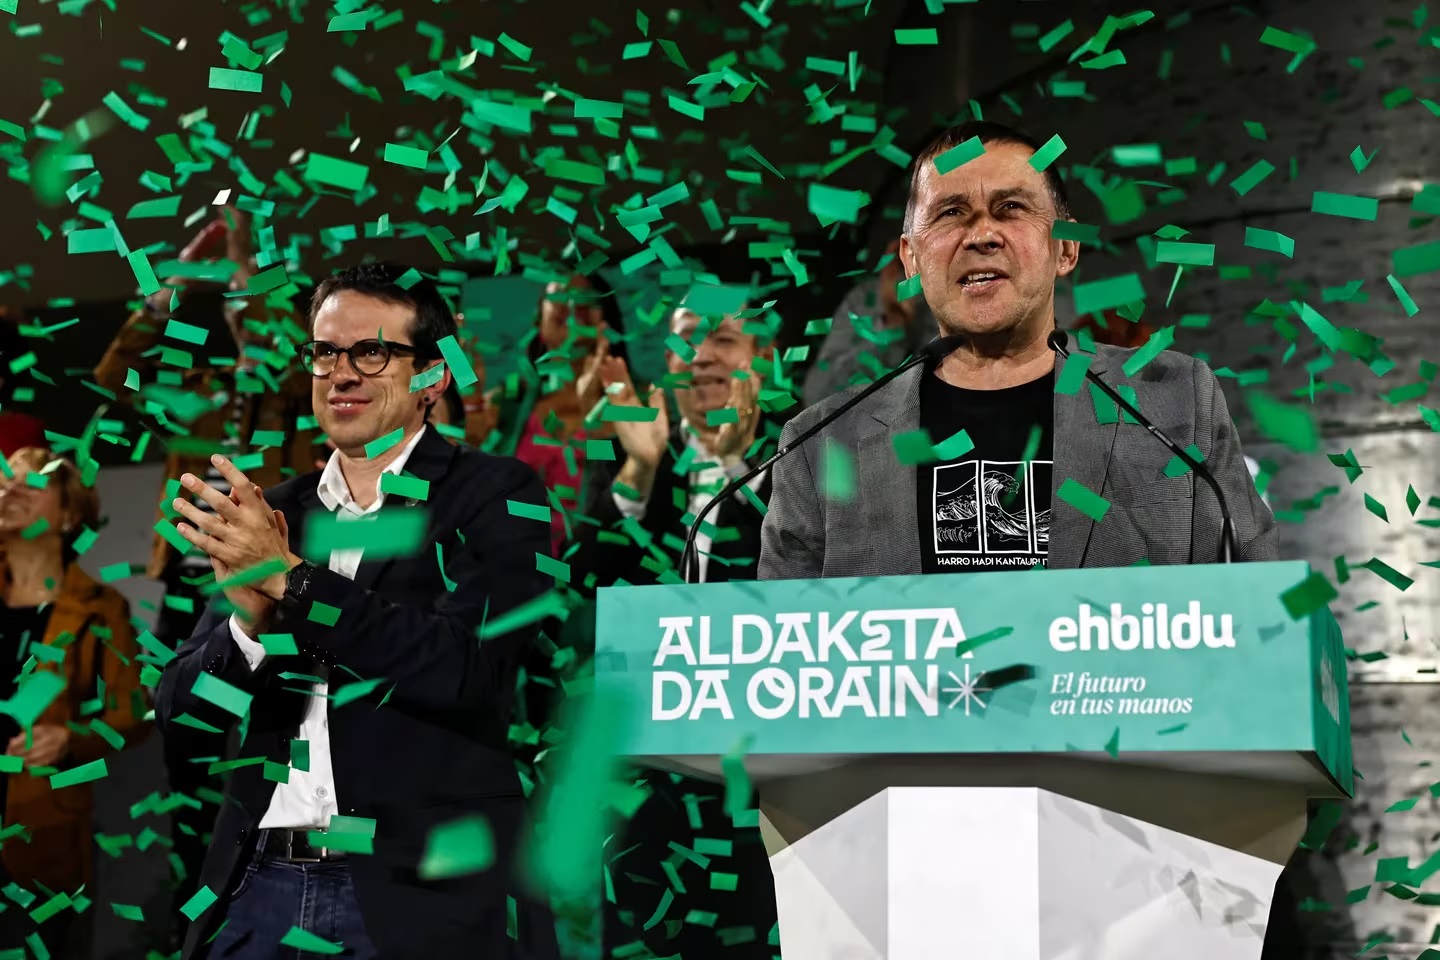 elecciones pais vasco